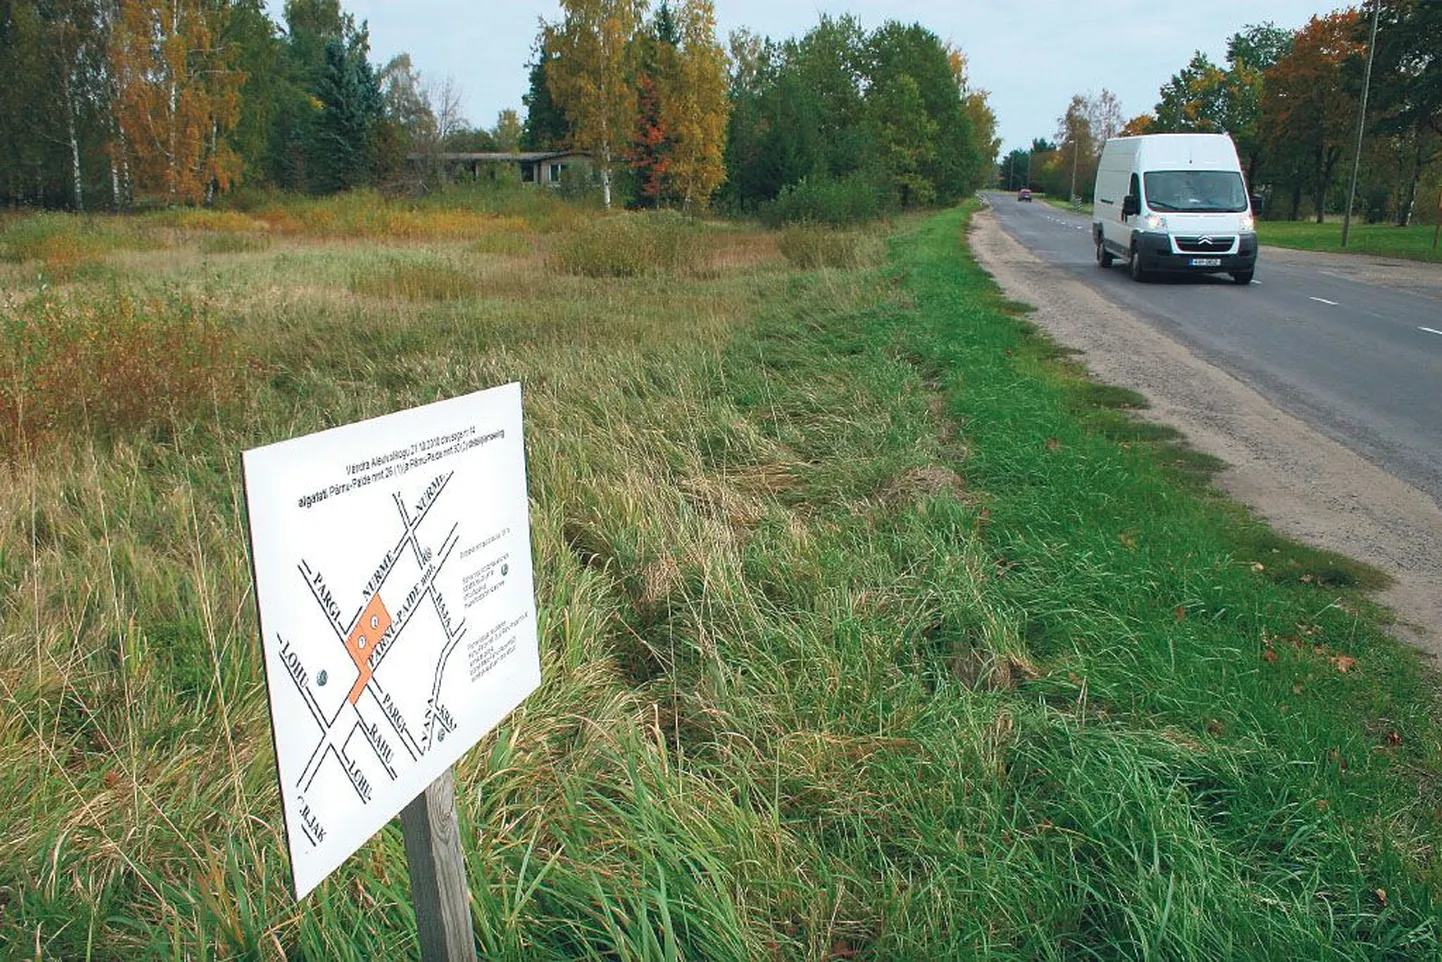 Grossi pood tuleb Vändra alevi bussijaama lähedale tühermaale Pärnu–Paide maantee ääres.